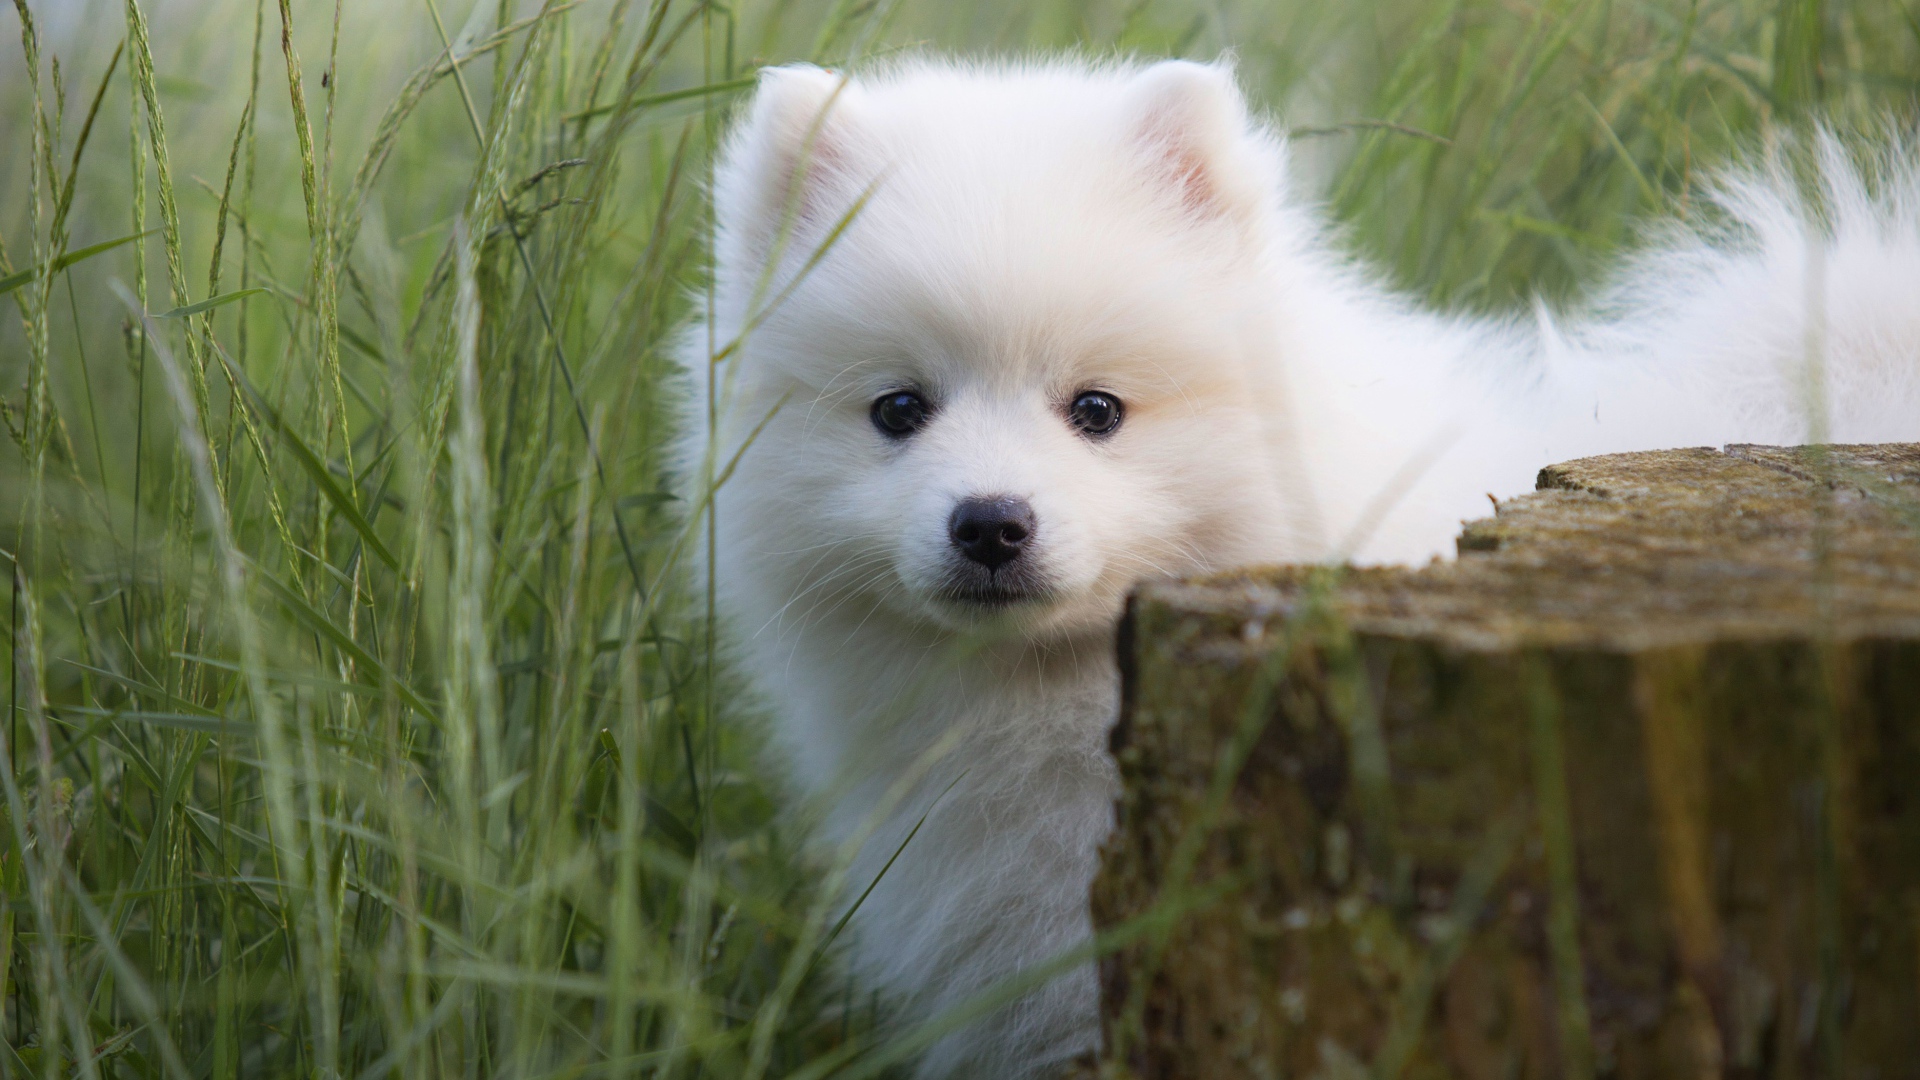 Little fluffy white Spitz puppy in green grass